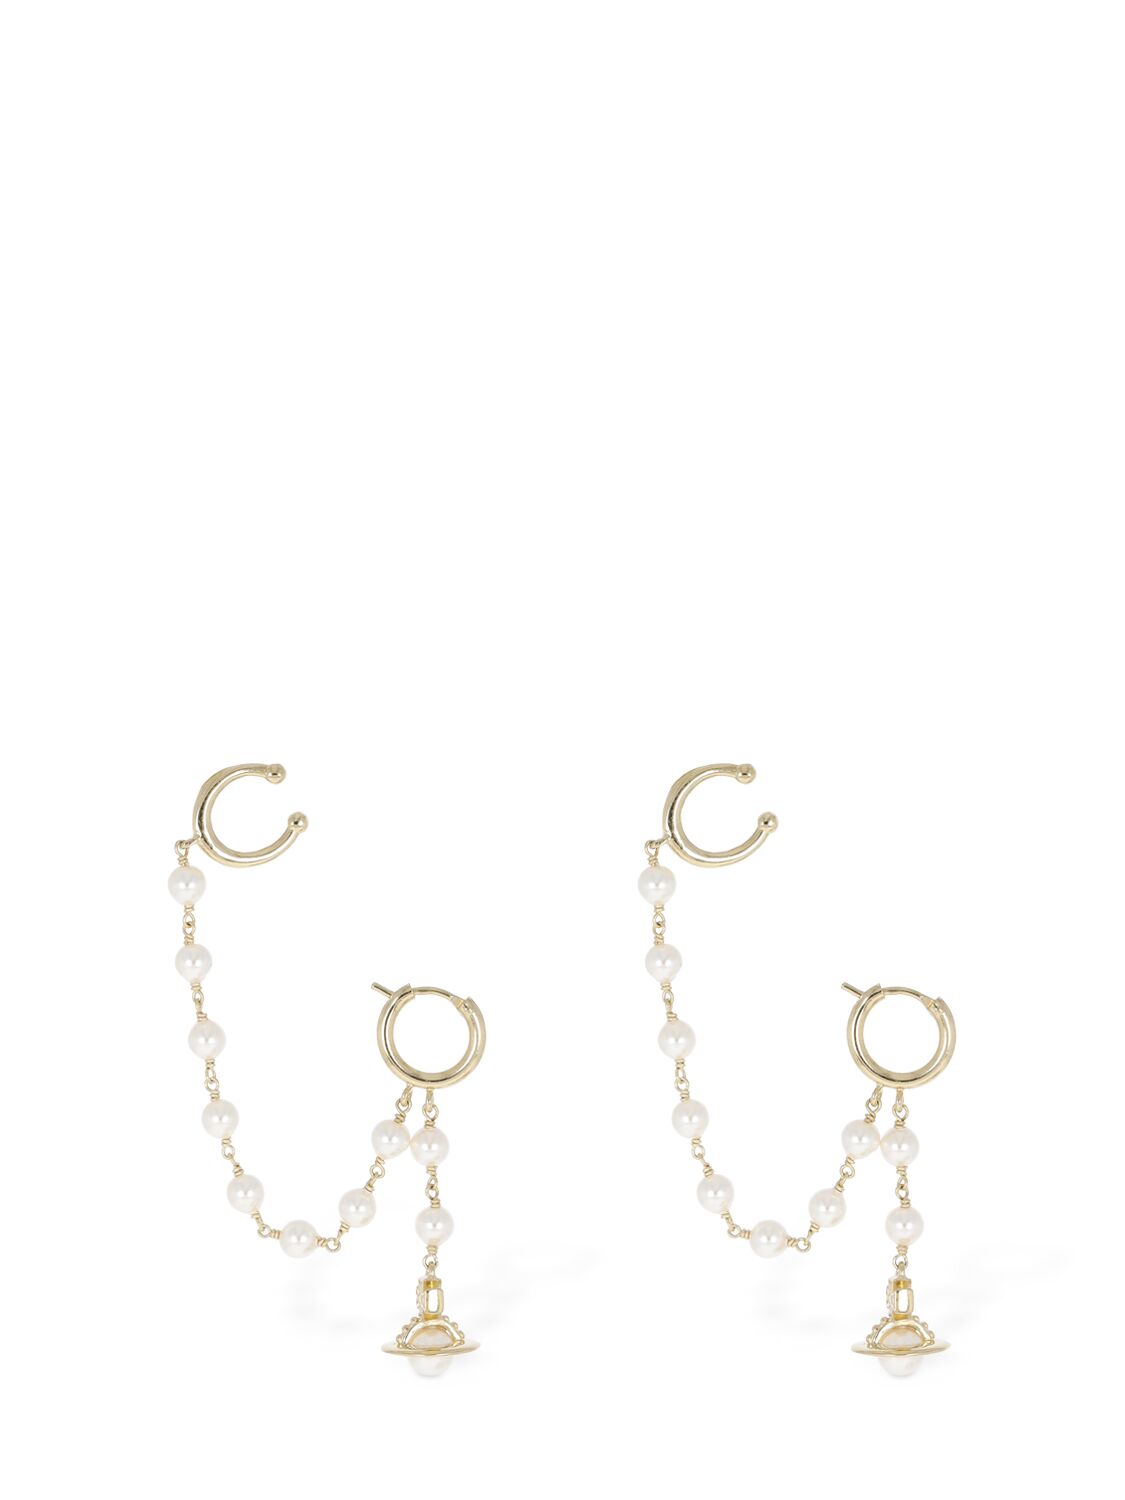 Vivienne Westwood Samara Faux Pearl Ear Cuff Earrings In Gold,cream